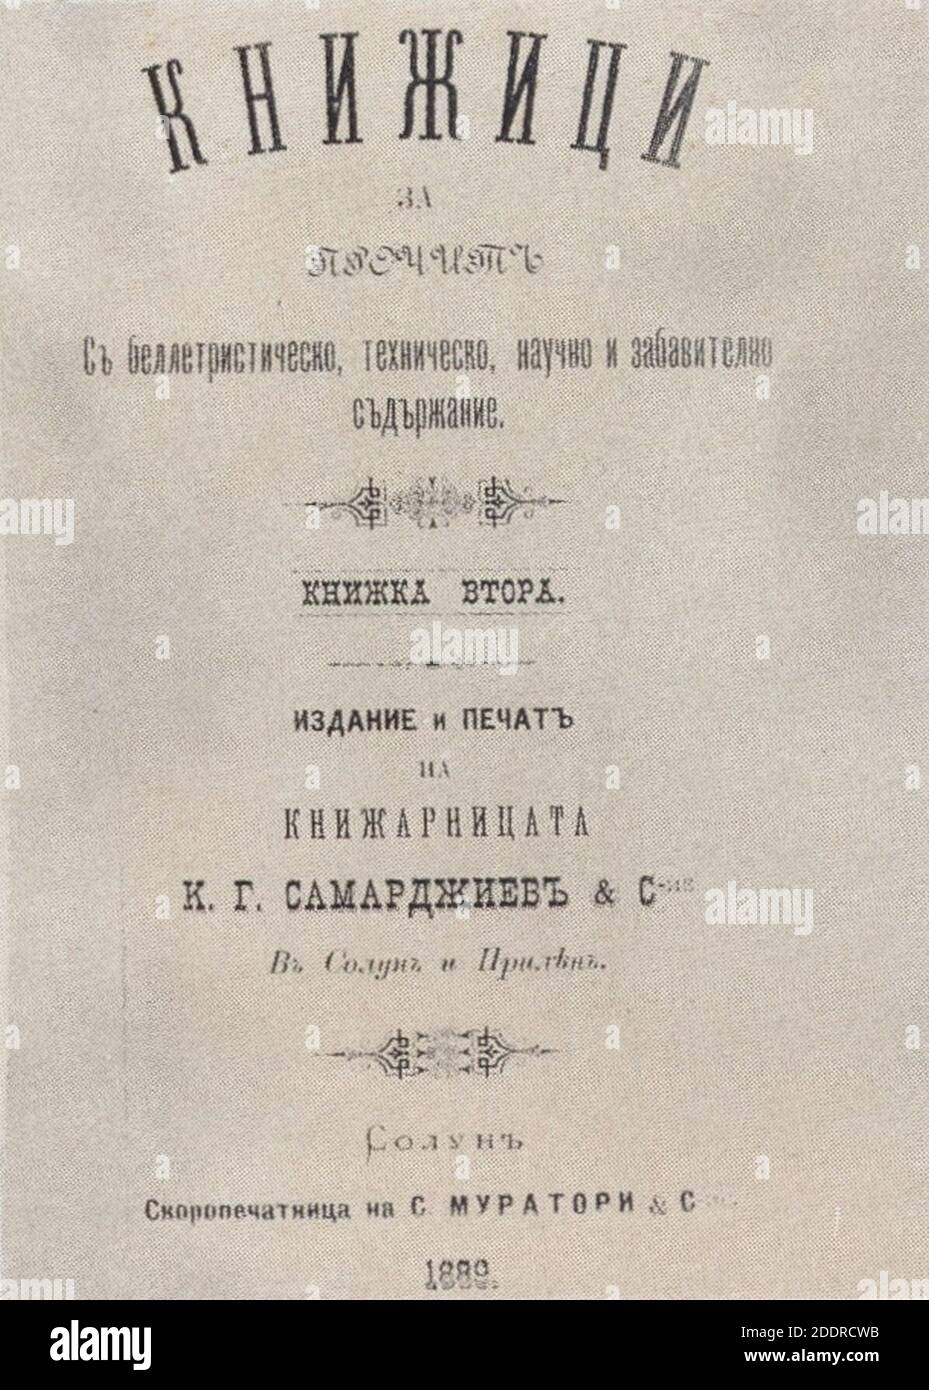 Knischitsi-Samardschiev-Solun-1889. Stockfoto